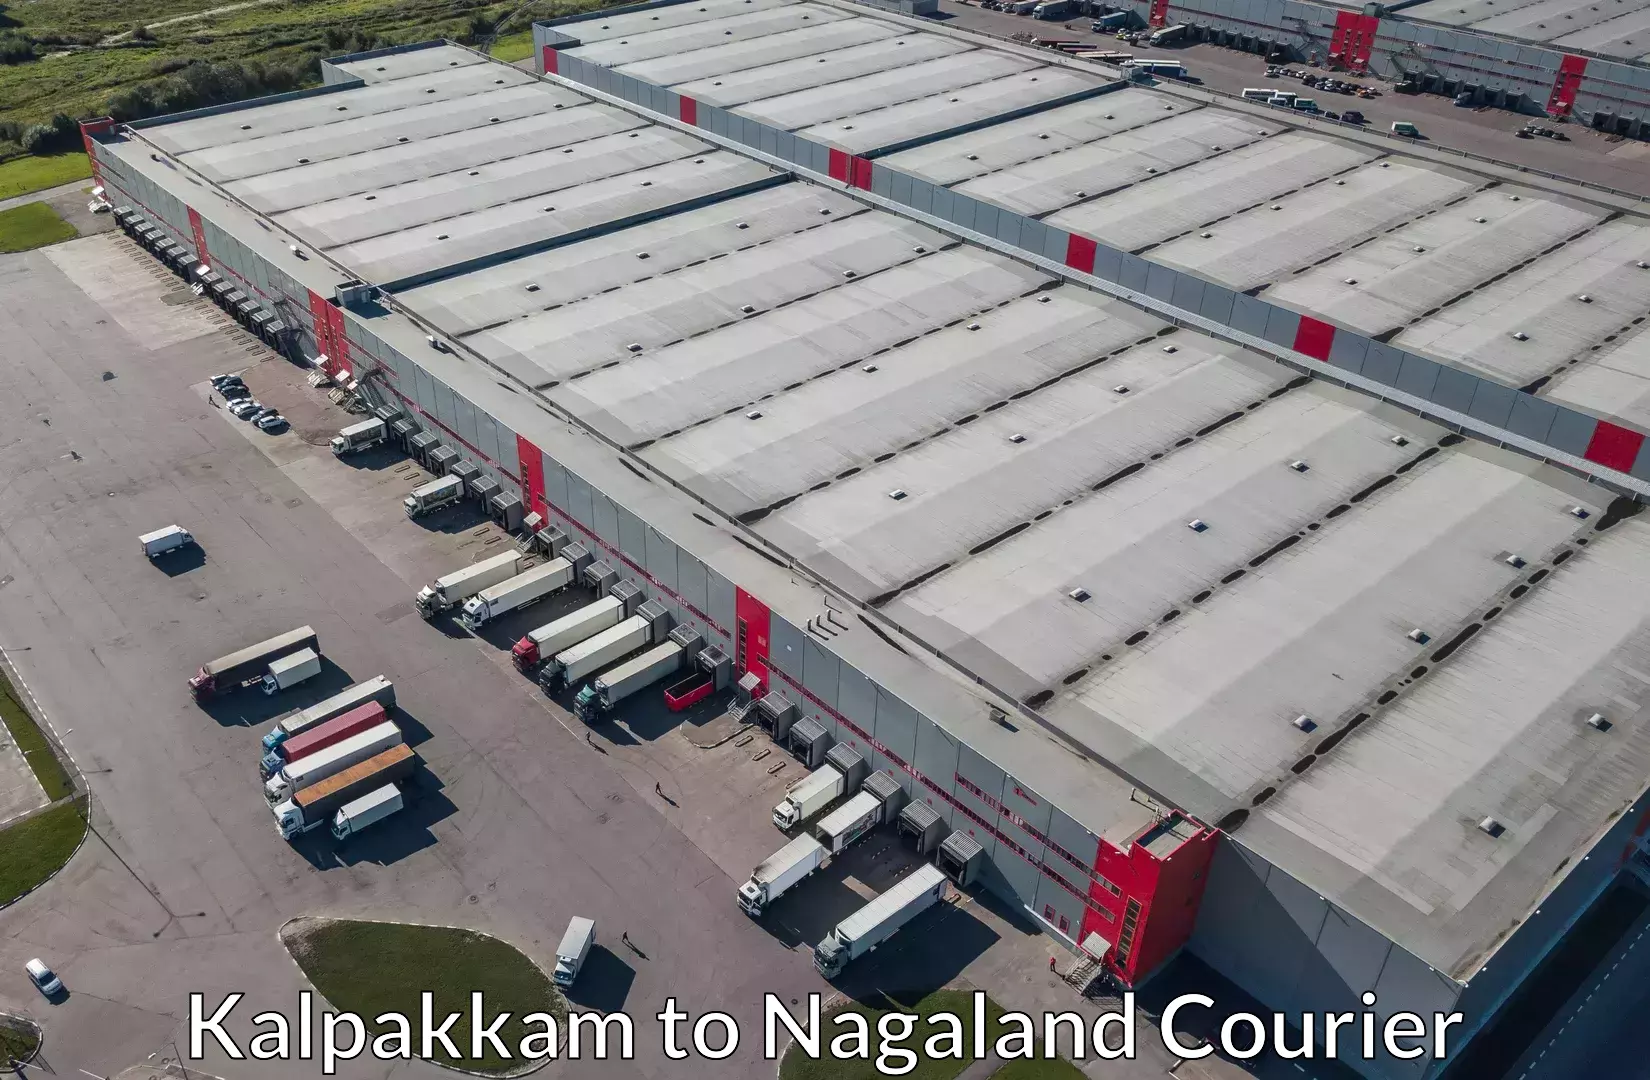 Baggage shipping experts Kalpakkam to Nagaland